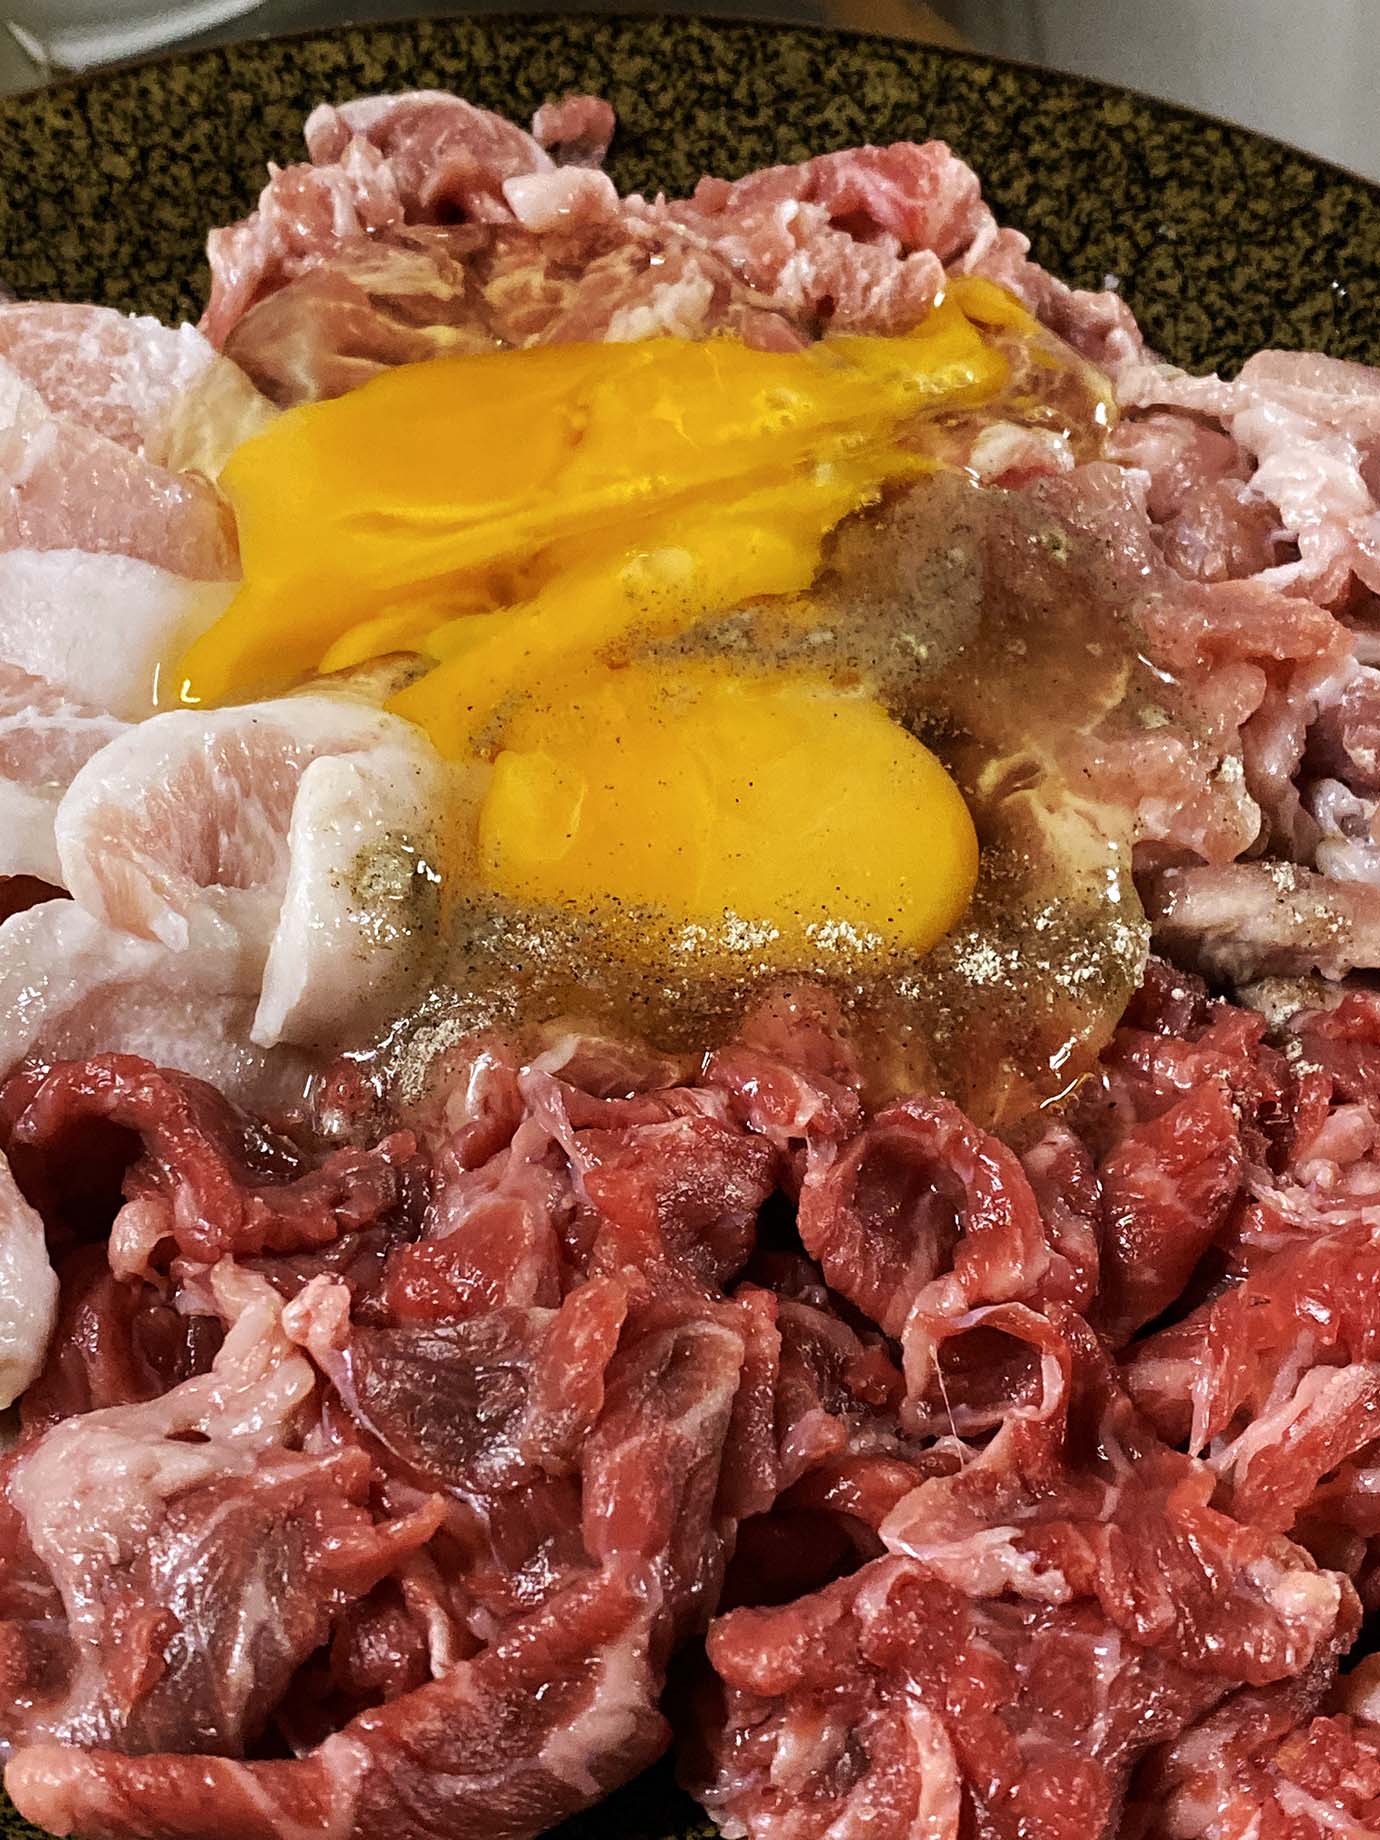 【裏グルメ】孤独のグルメ出演の浅草のタイ料理店イサーンの裏メニューがウマすぎる件 / チムチュム鍋